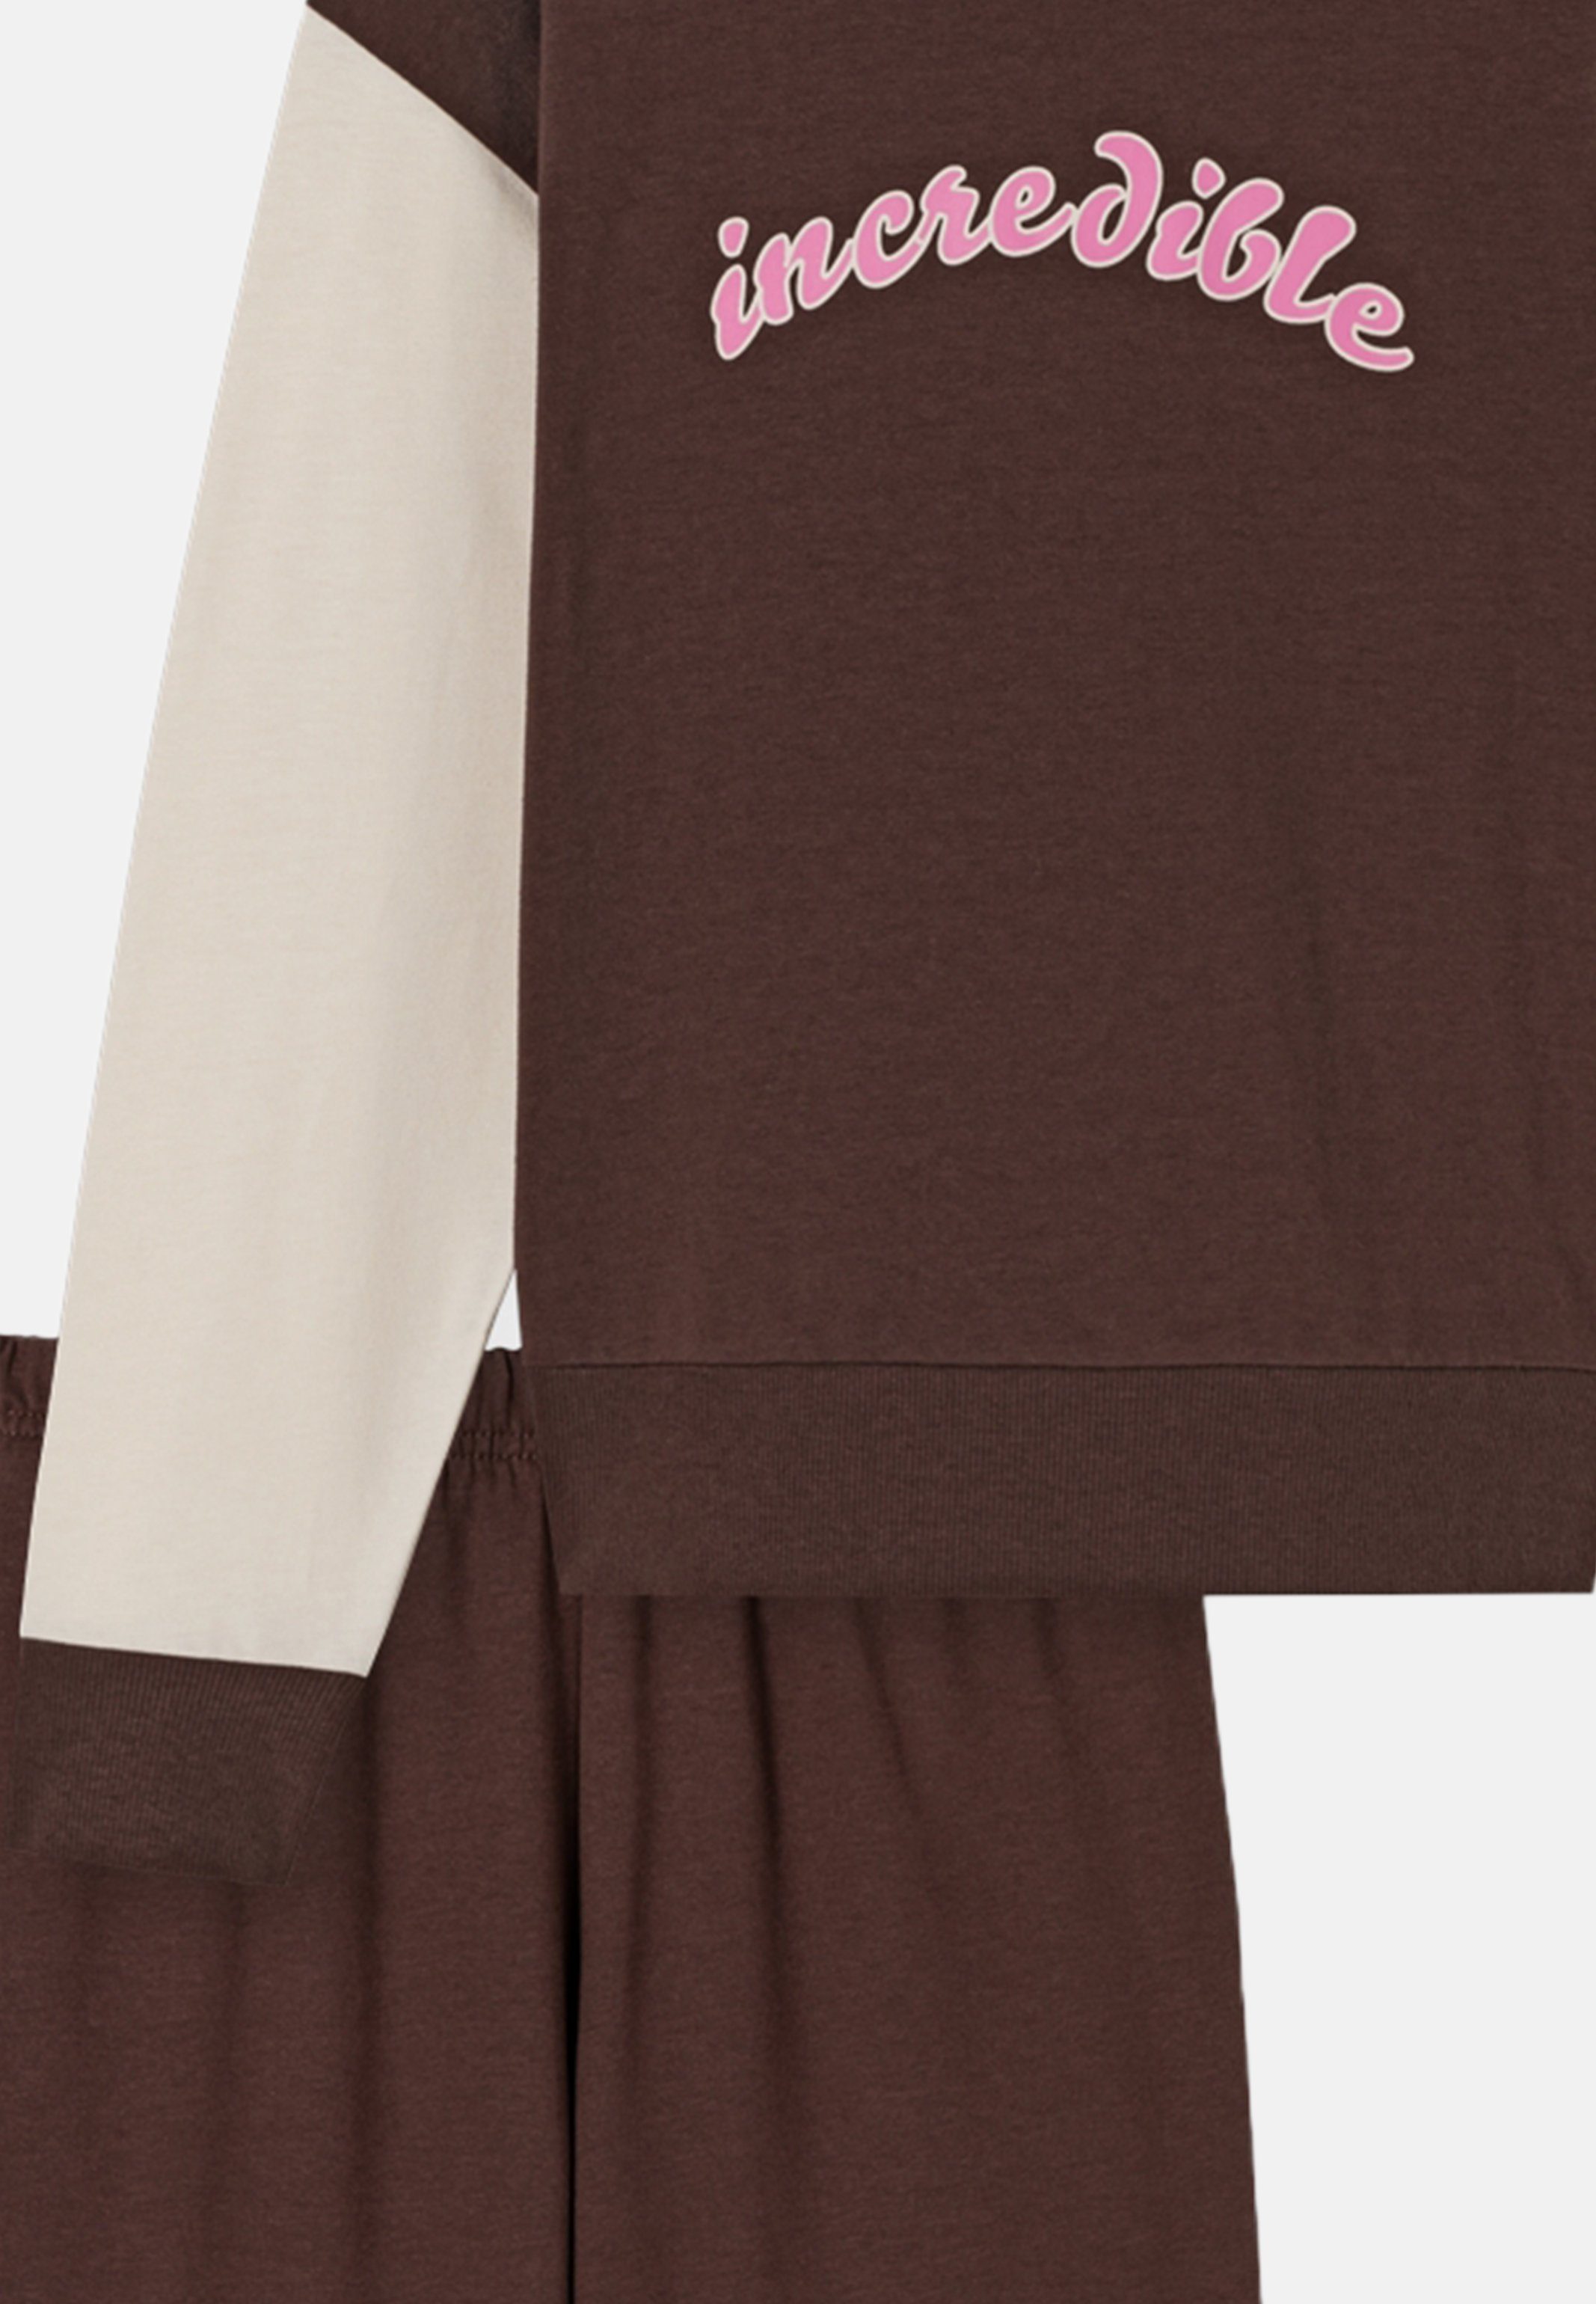 Schiesser Pyjama Nightwear Organic Baumwolle Braun - mit 2 Cotton tlg) Brust-Print Schlafanzug - Langarmshirt (Set